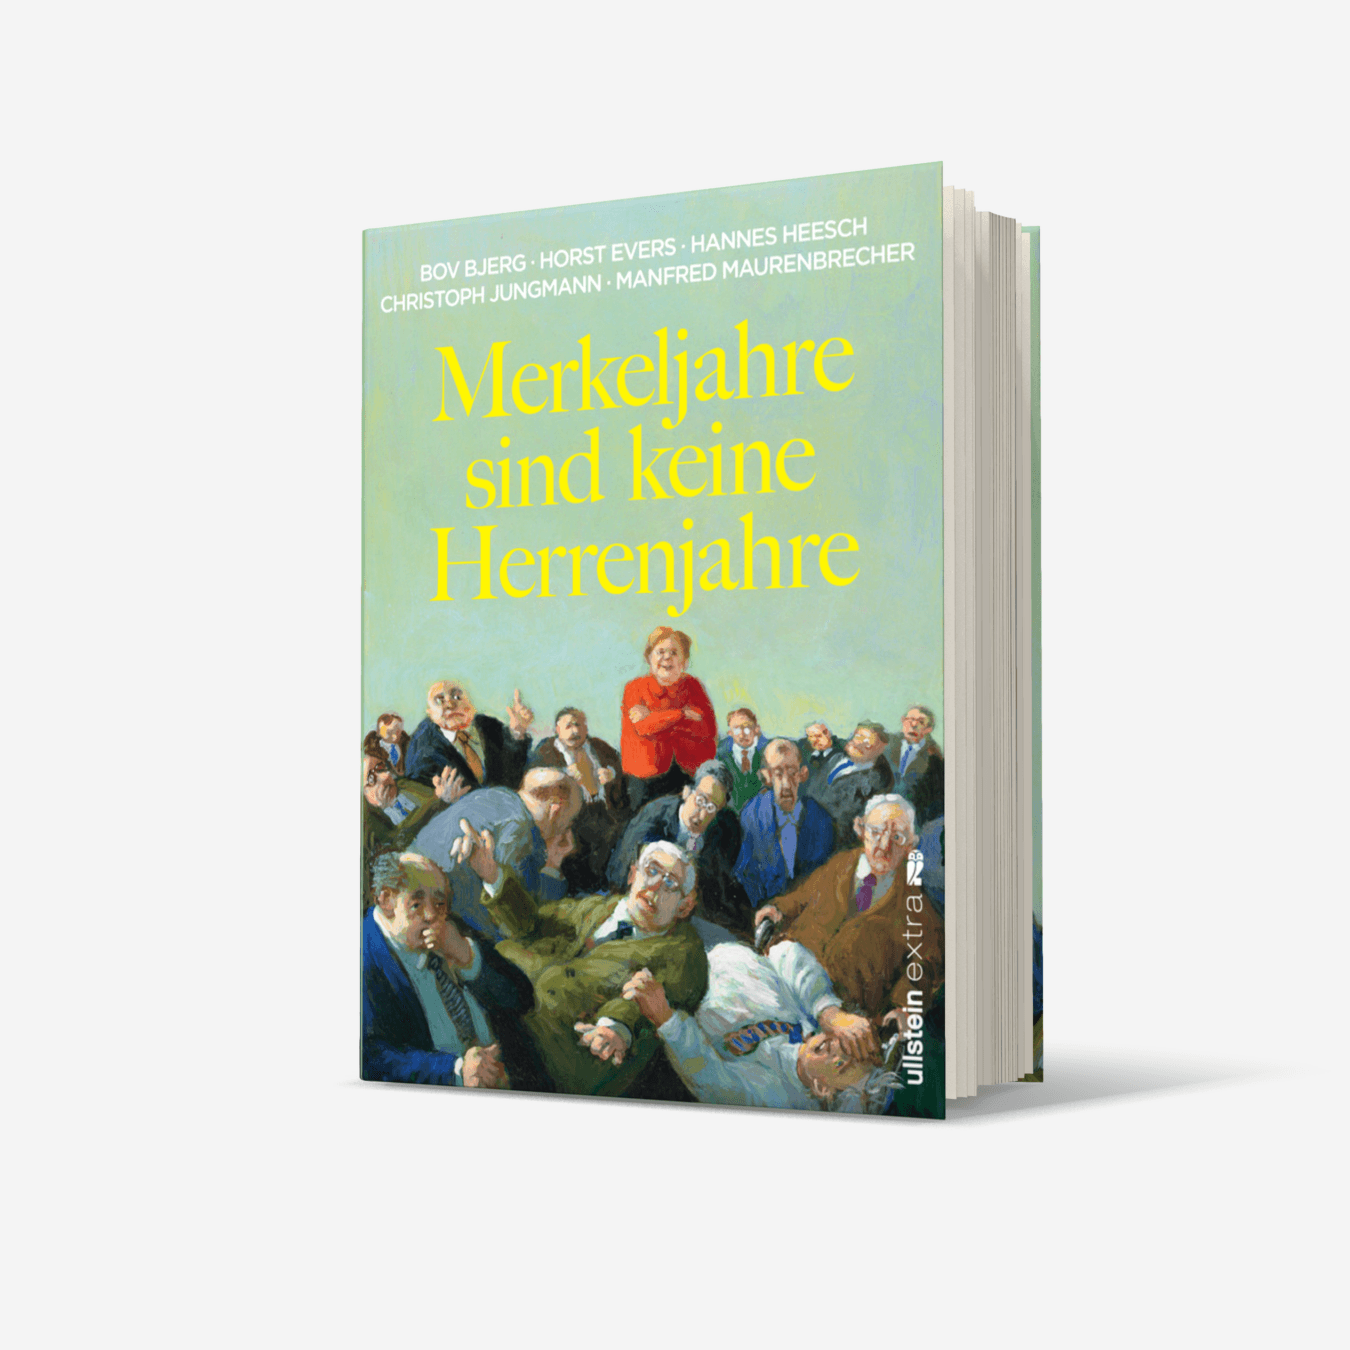 Buchcover von Merkeljahre sind keine Herrenjahre